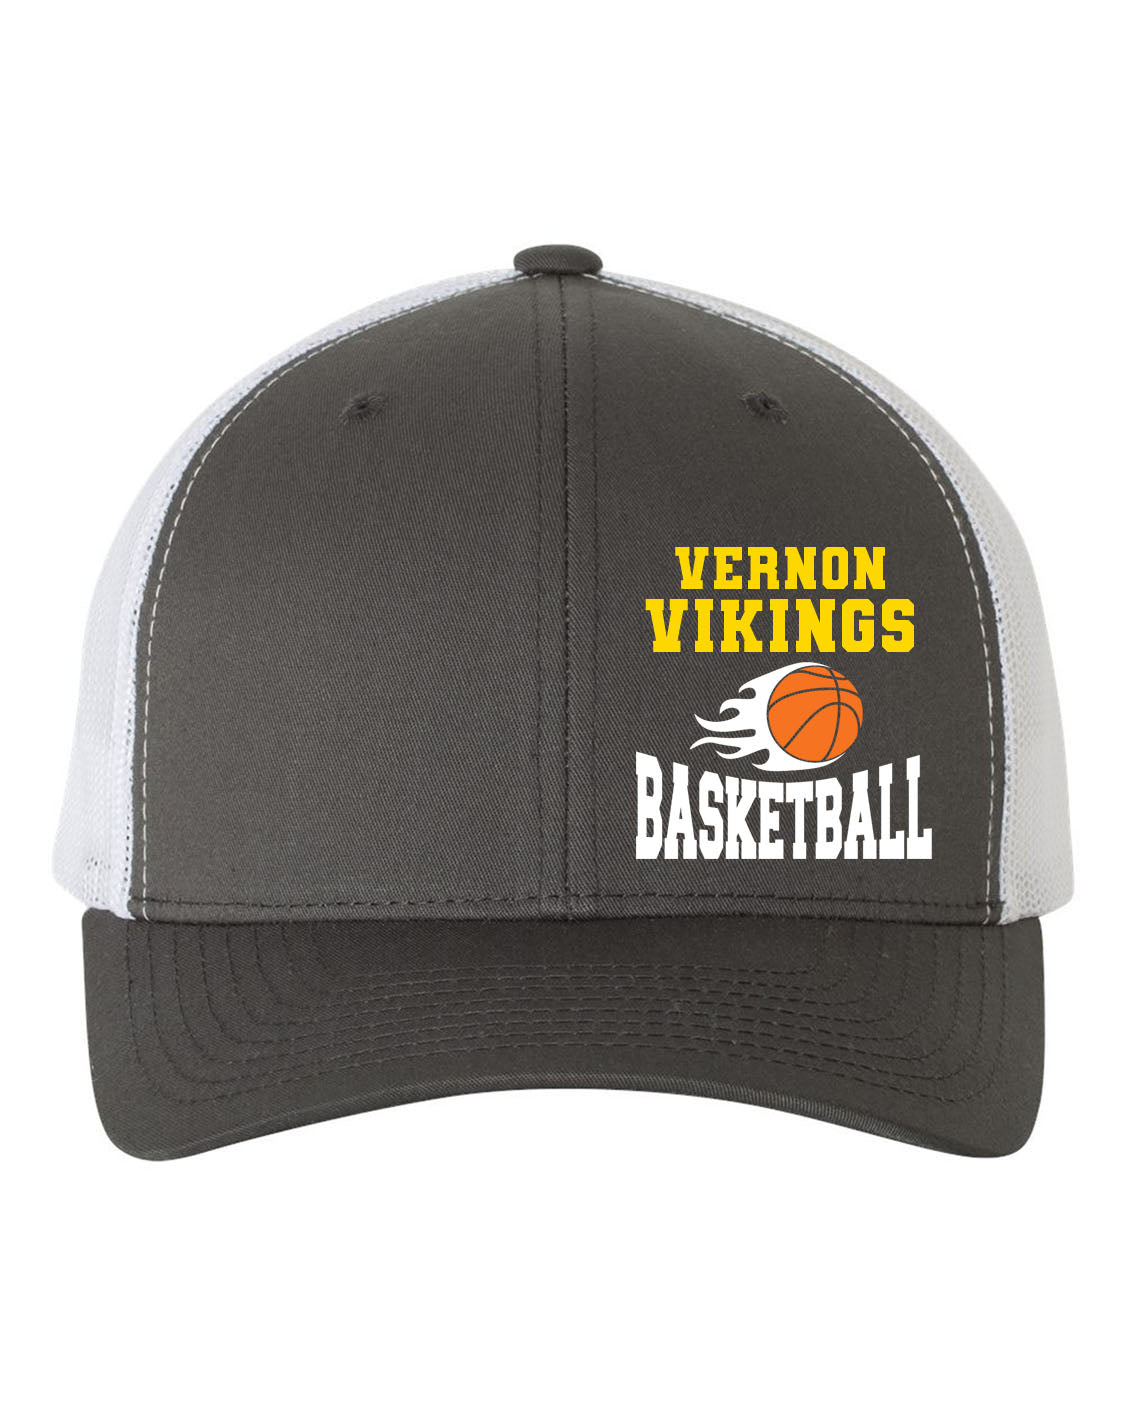 Vikings Basketball Design 4 Trucker Hat